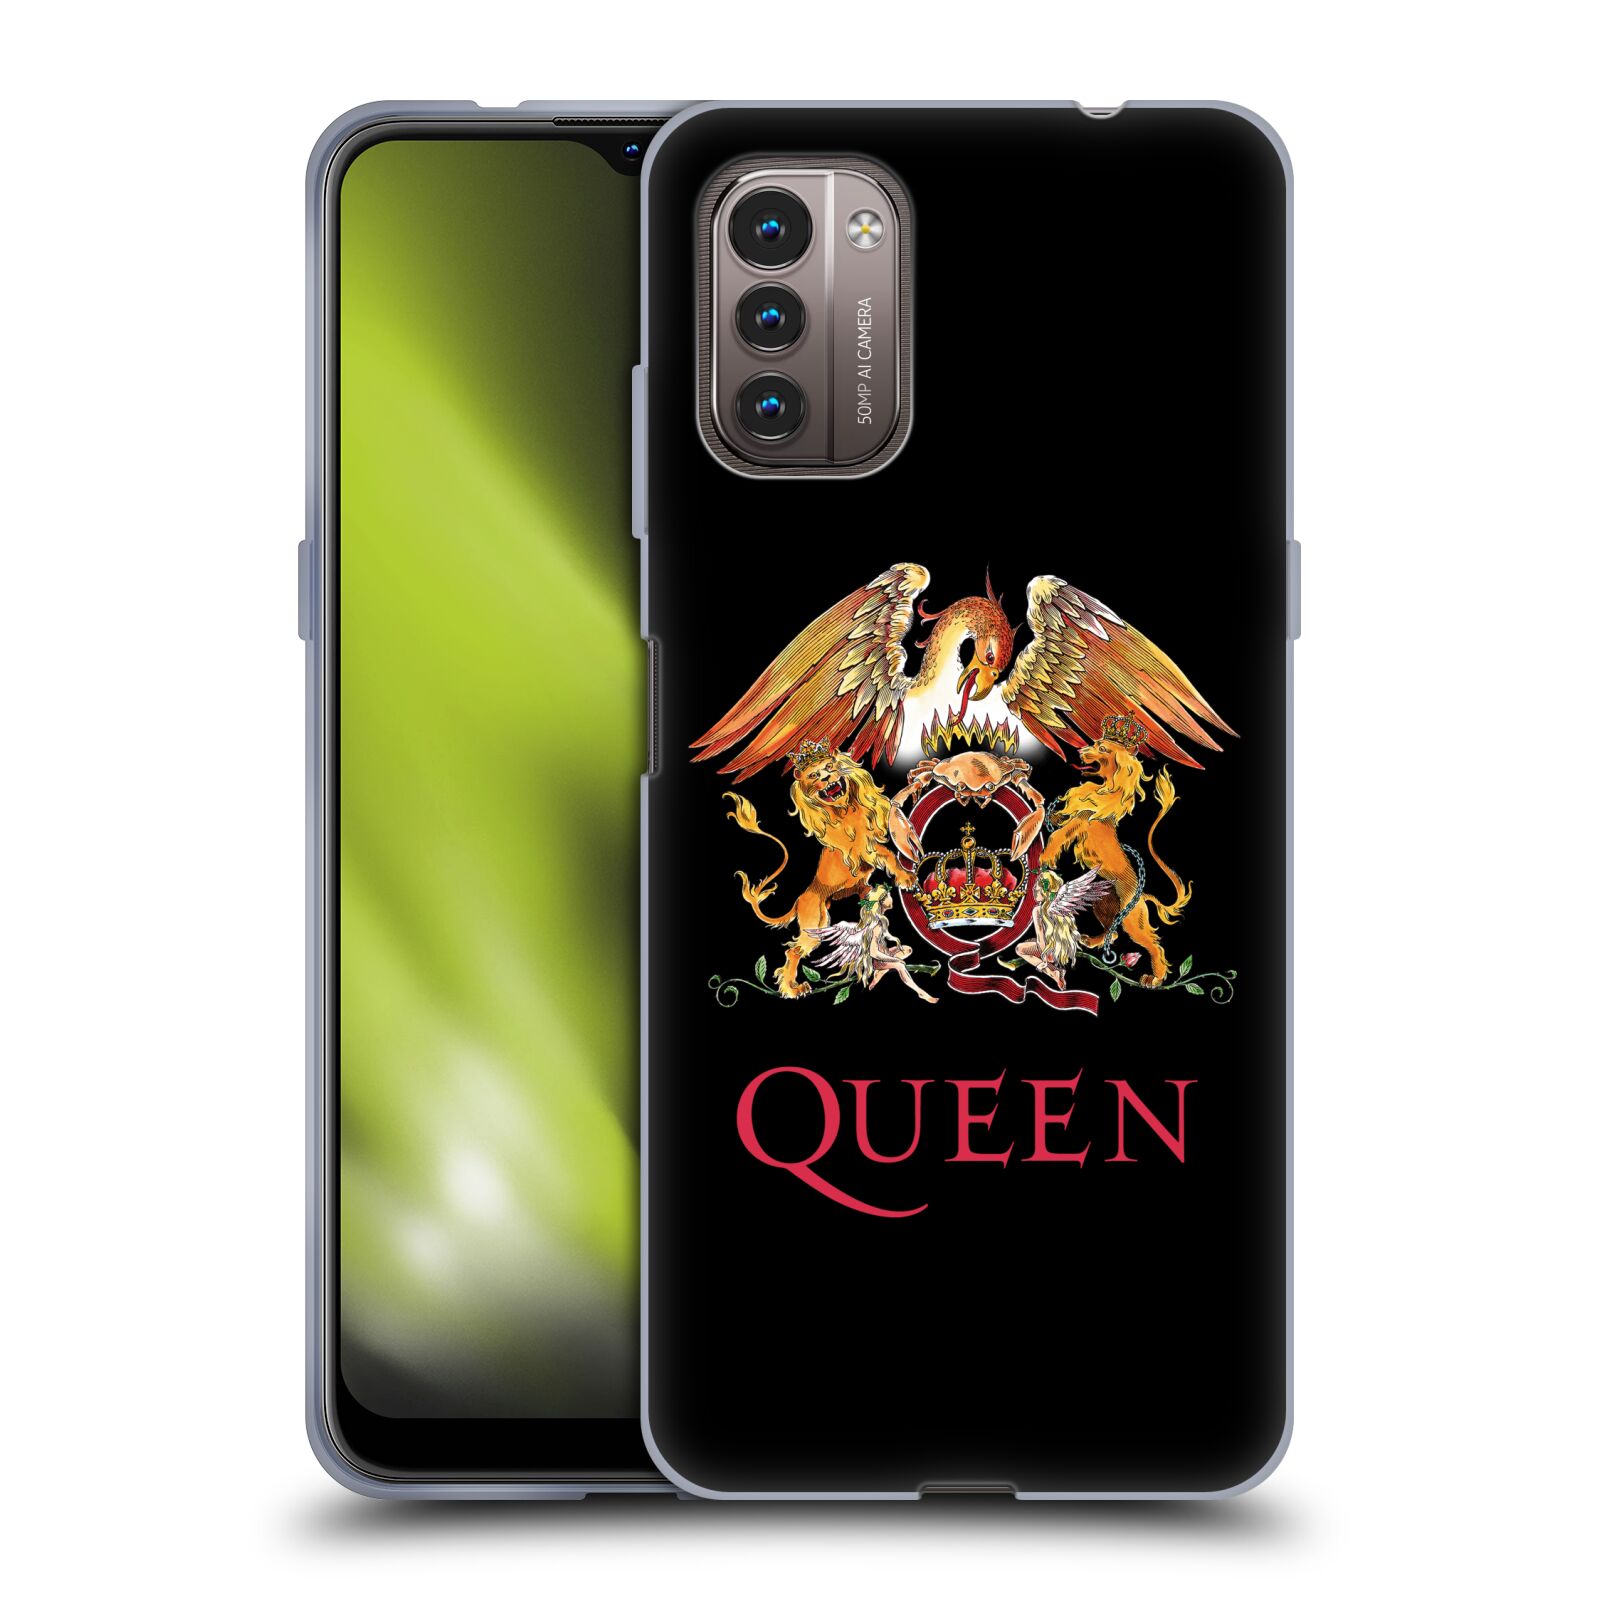 Silikonové pouzdro na mobil Nokia G11 / G21 - Head Case - Queen - Logo